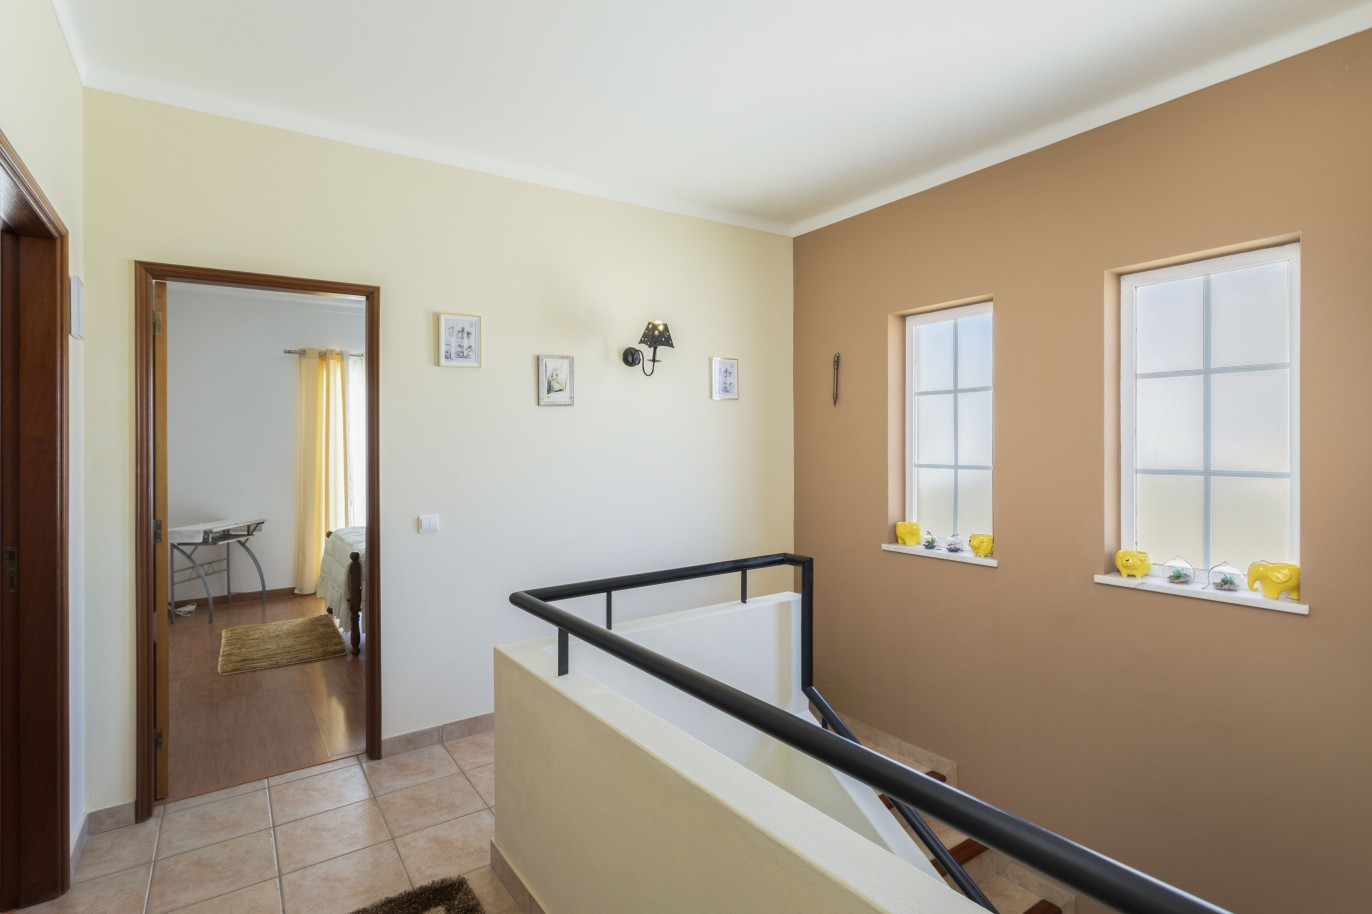 Villa de 3 dormitorios en venta en Porto de Mós, Algarve_233233